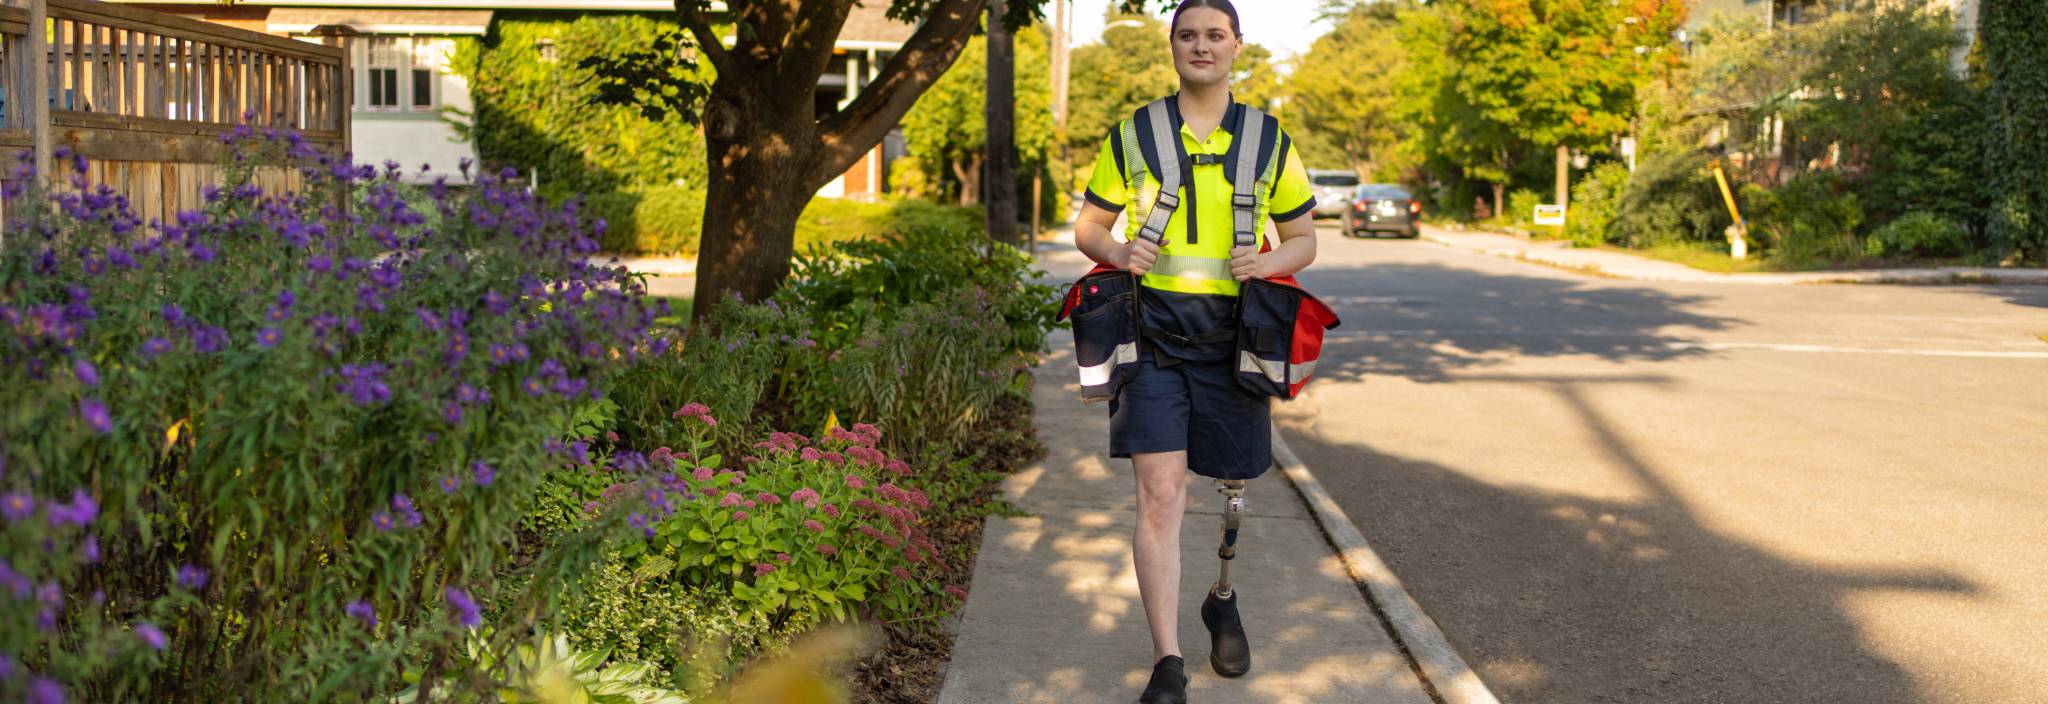 Une factrice de Postes Canada avec une jambe prothétique marche dans une rue résidentielle en portant des sacs de courrier. 